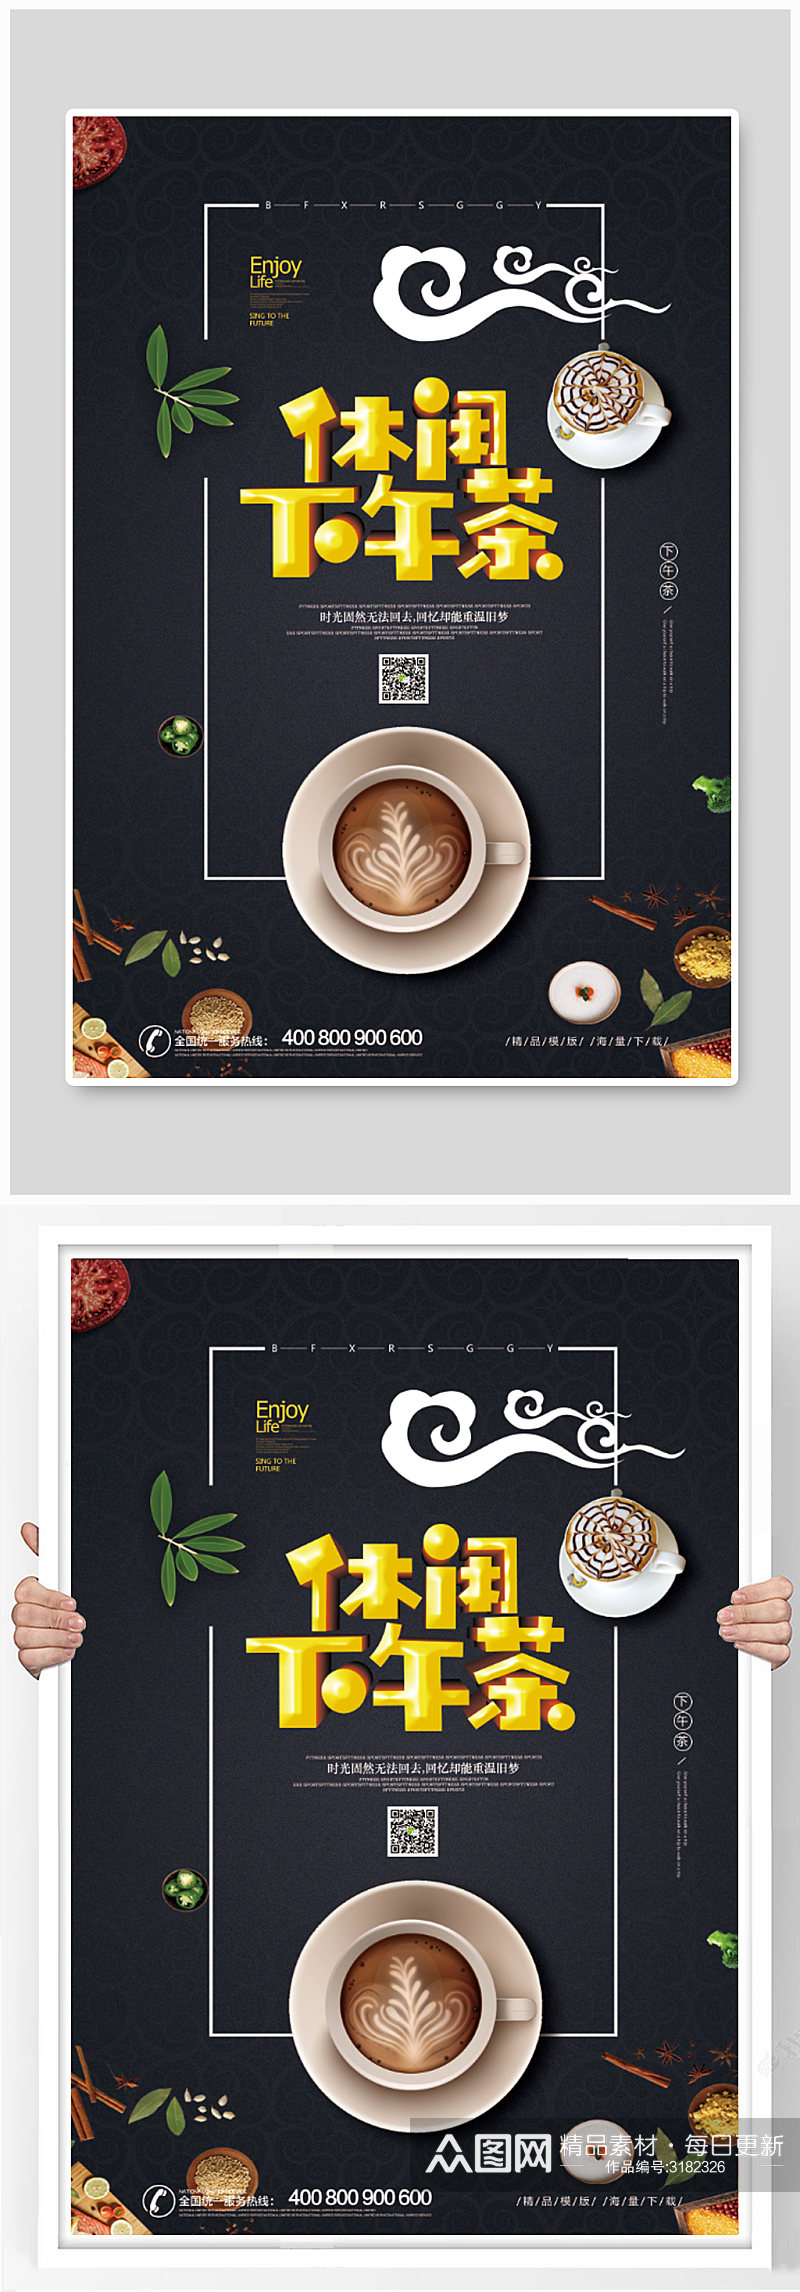 休闲下午茶咖啡甜品宣传海报素材